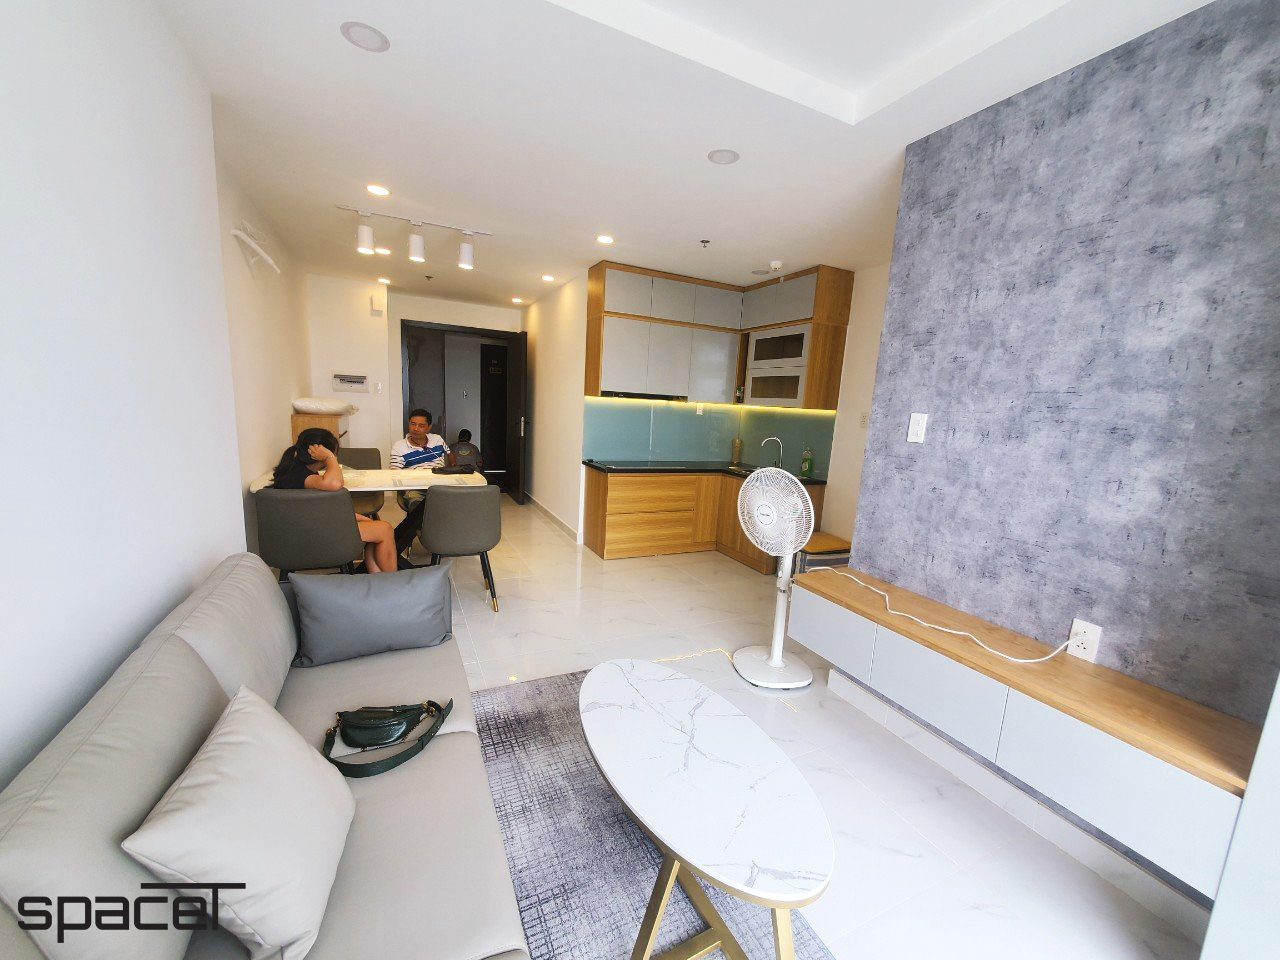 Phòng khách, phòng bếp, phong cách hiện đại Modern, hoàn thiện nội thất, căn hộ Terra Mia Bình Chánh.